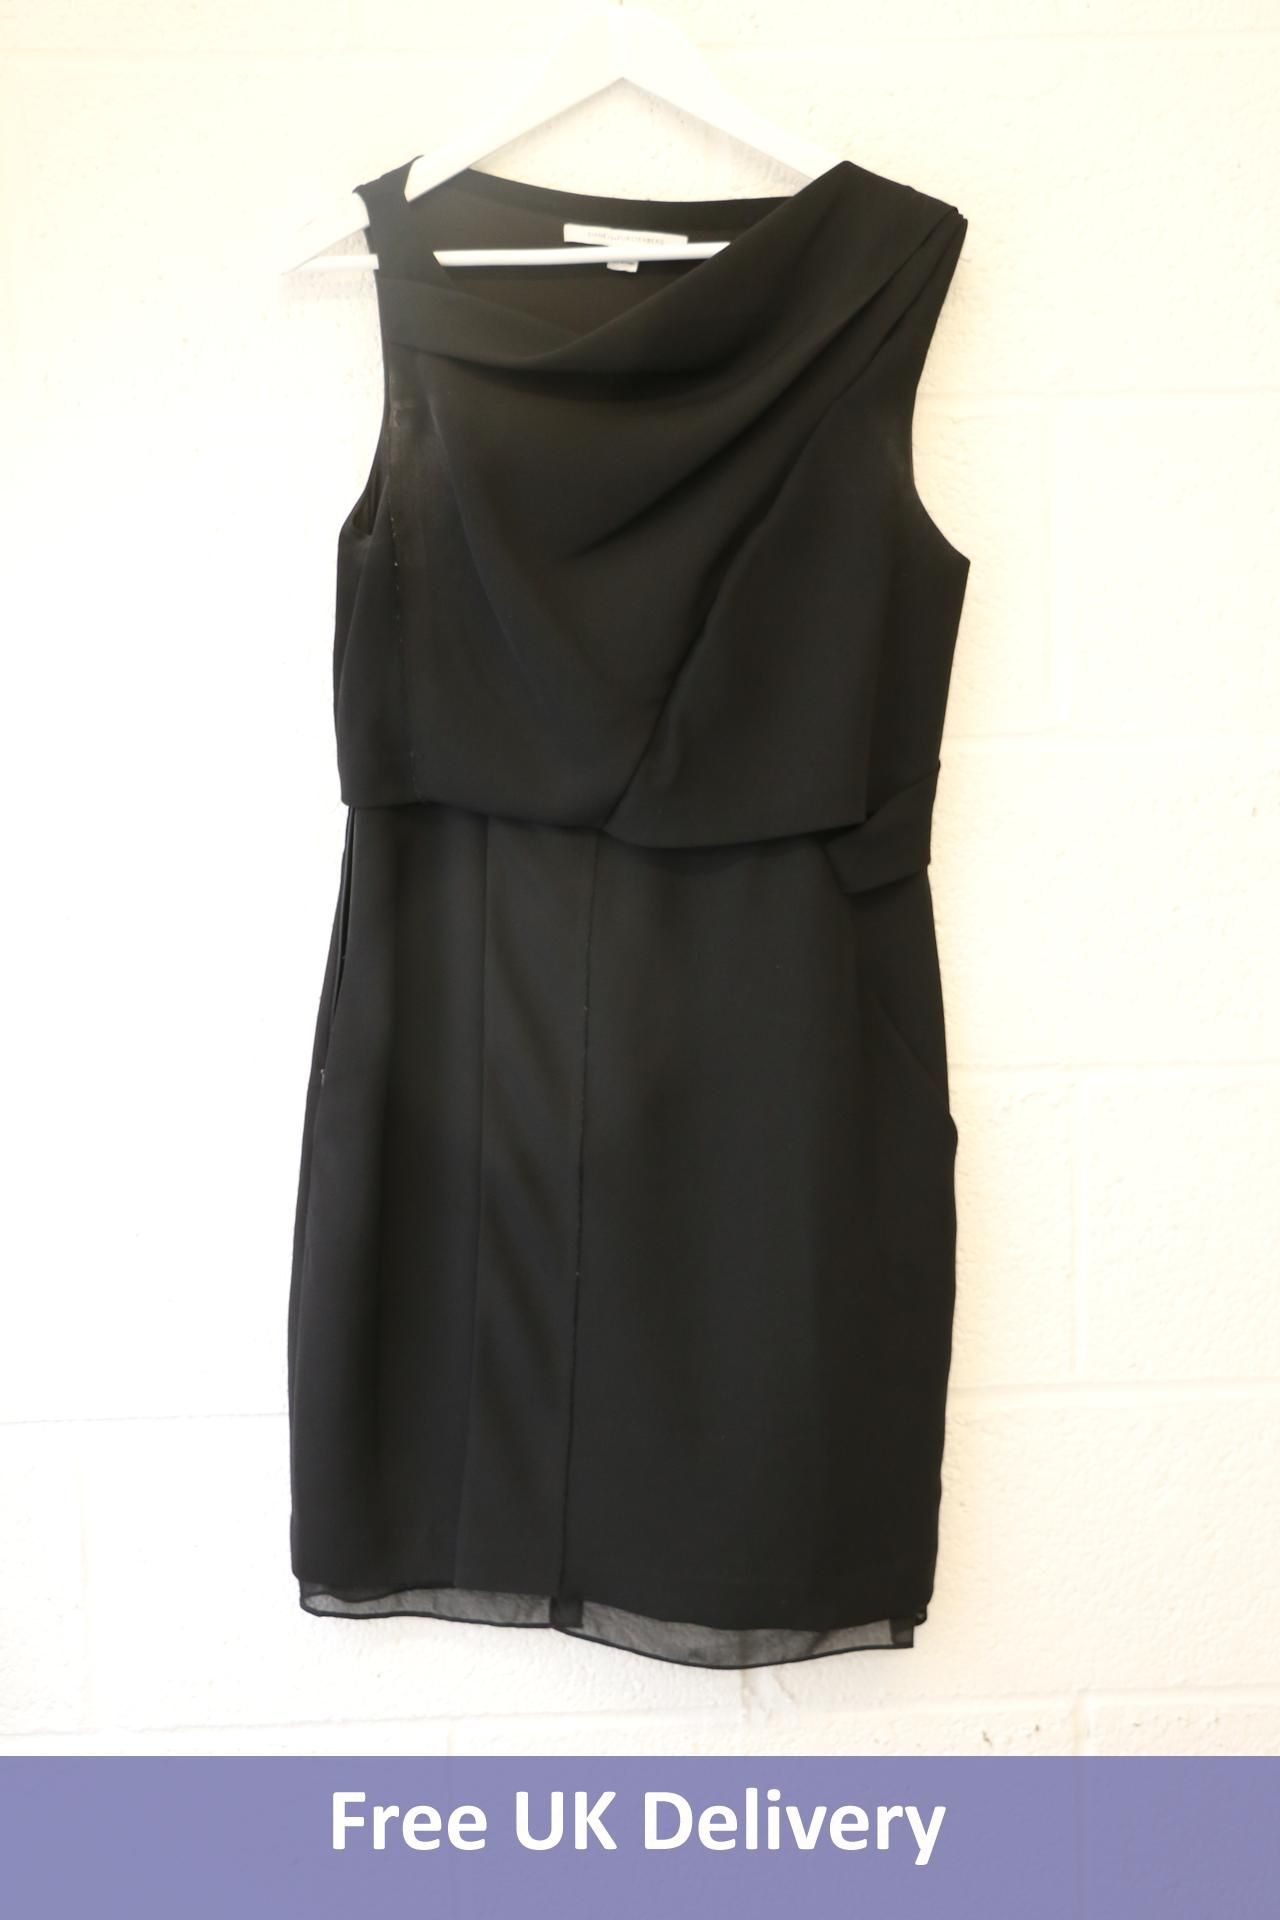 Diane Von Furstenberg Dress, Black, Size 10. Used, stained.